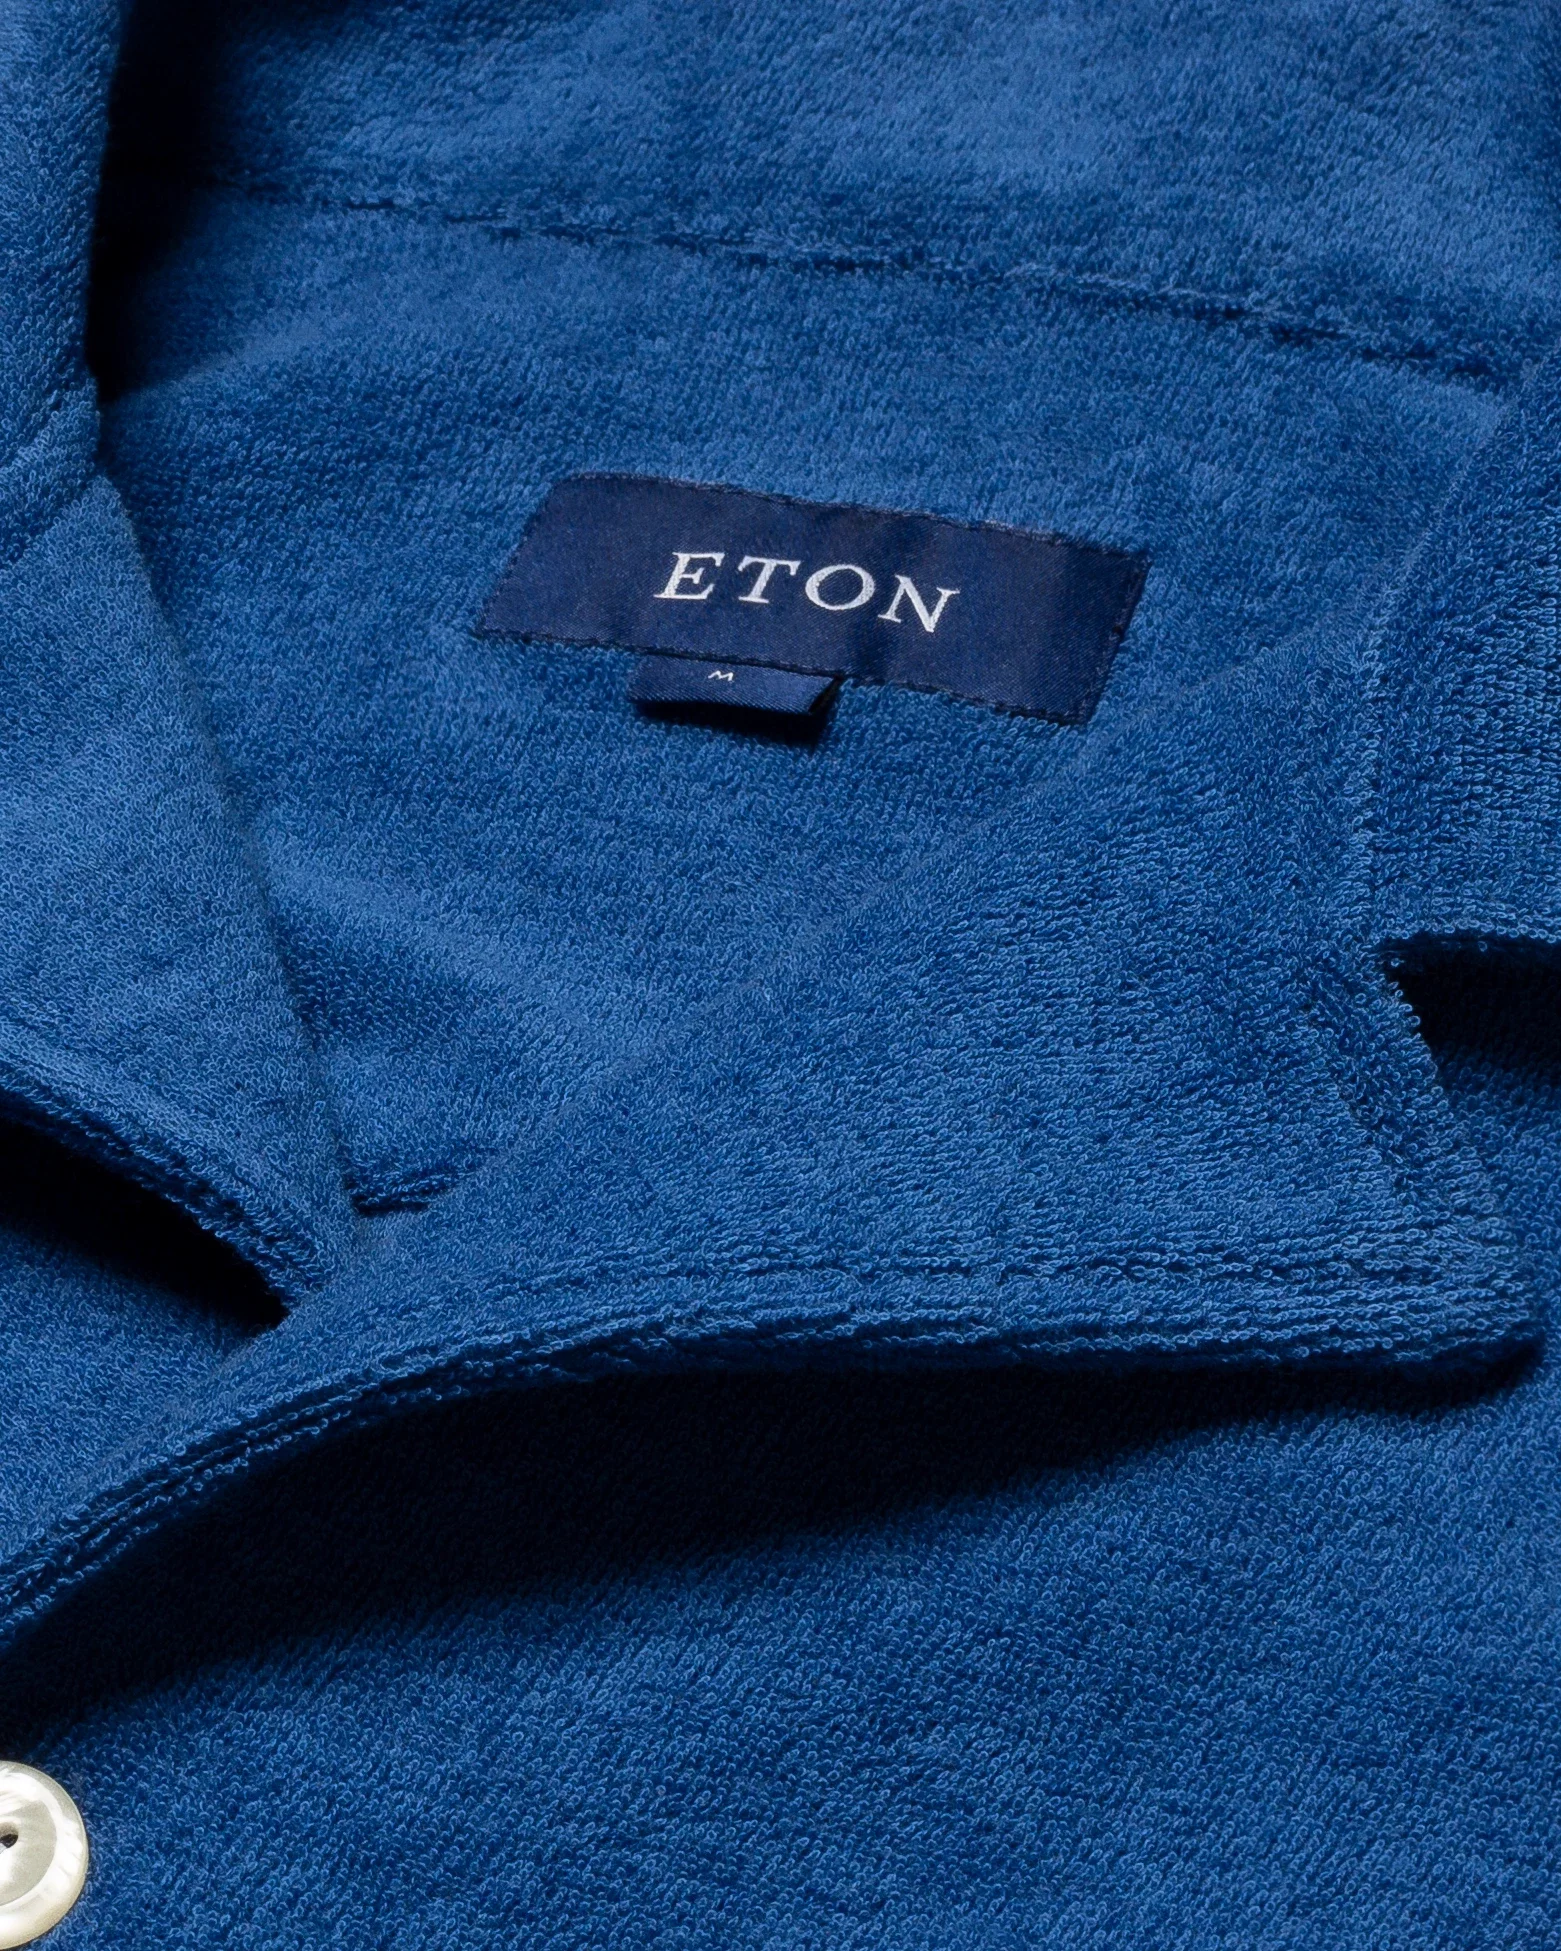 Eton - blue terry resort shirt